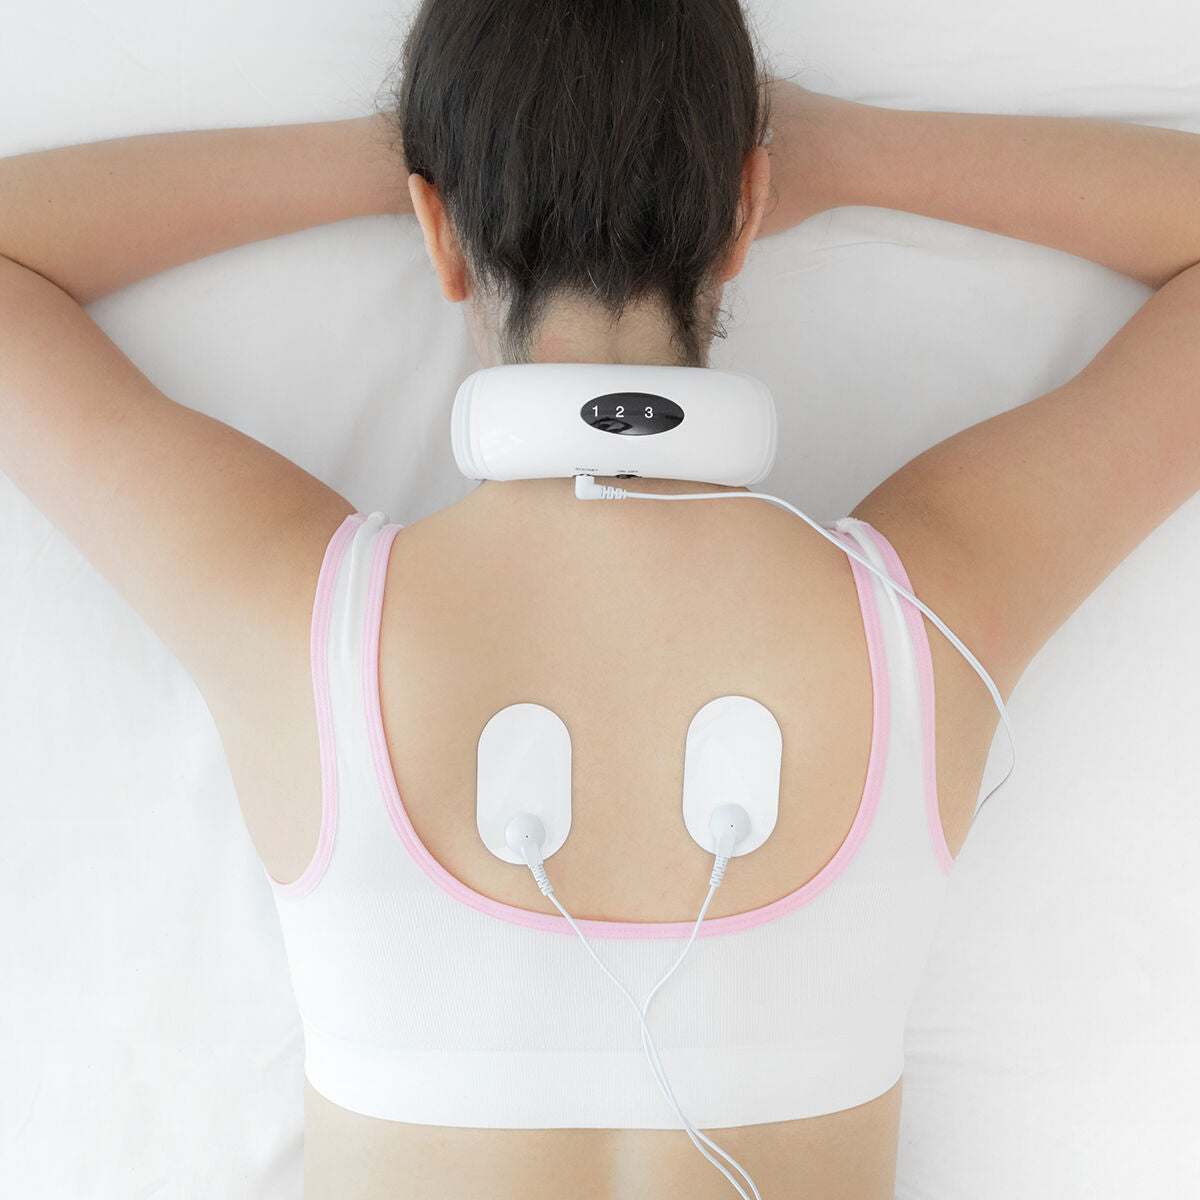 Elektromagnetisches Nacken- und Rückenmassagegerät Calmagner InnovaGoods - CA International  